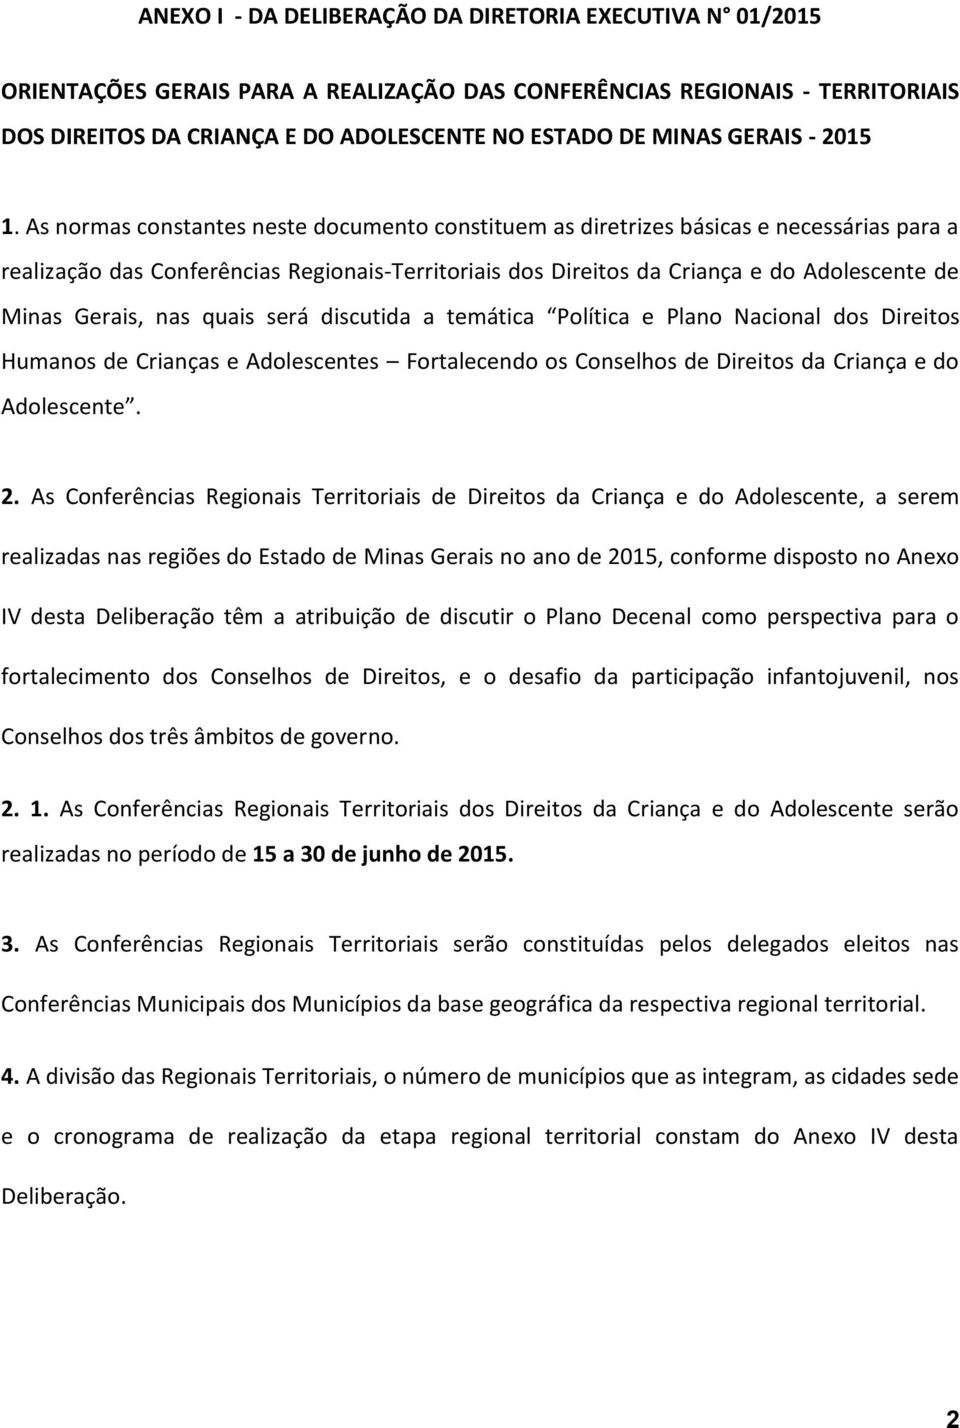 As normas constantes neste documento constituem as diretrizes básicas e necessárias para a realização das Conferências Regionais-Territoriais dos Direitos da Criança e do Adolescente de Minas Gerais,